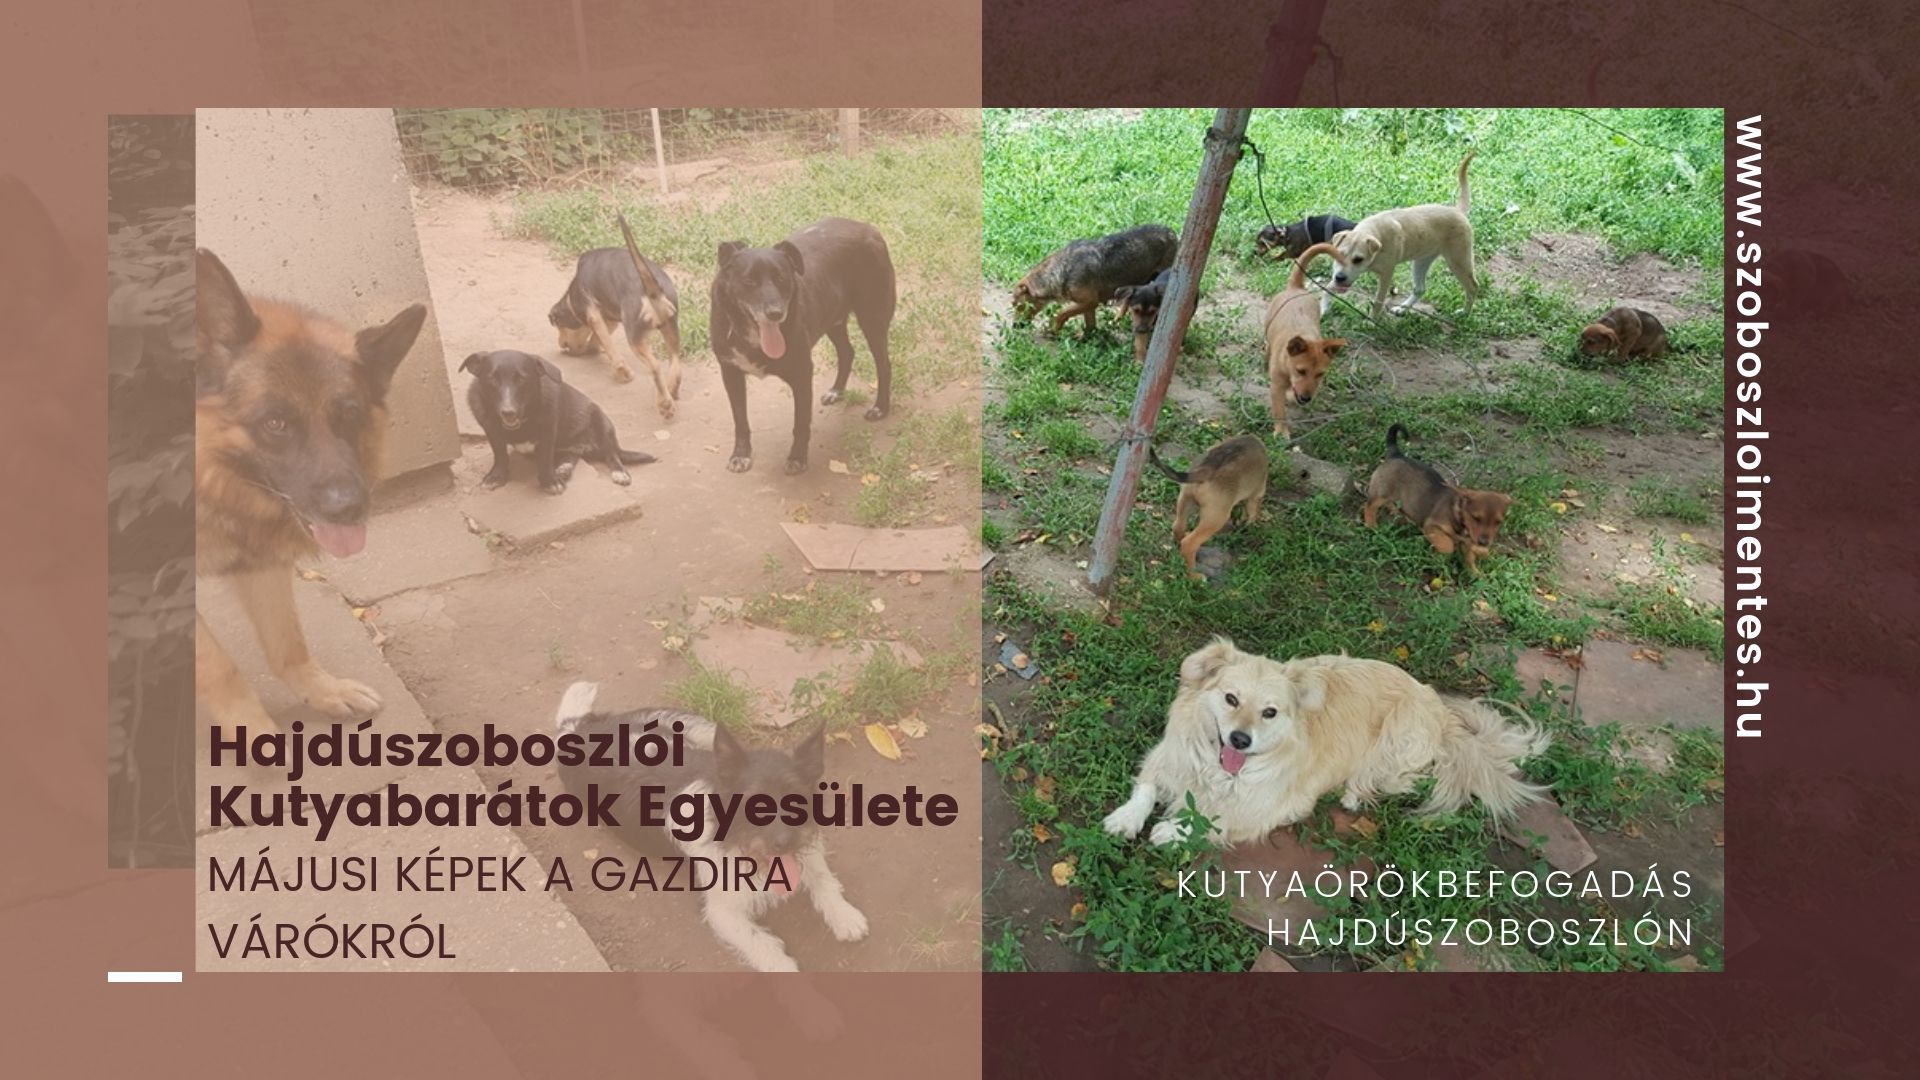 Kutya örökbefogadás – Hajdúszoboszló – 2019. májusi életképek